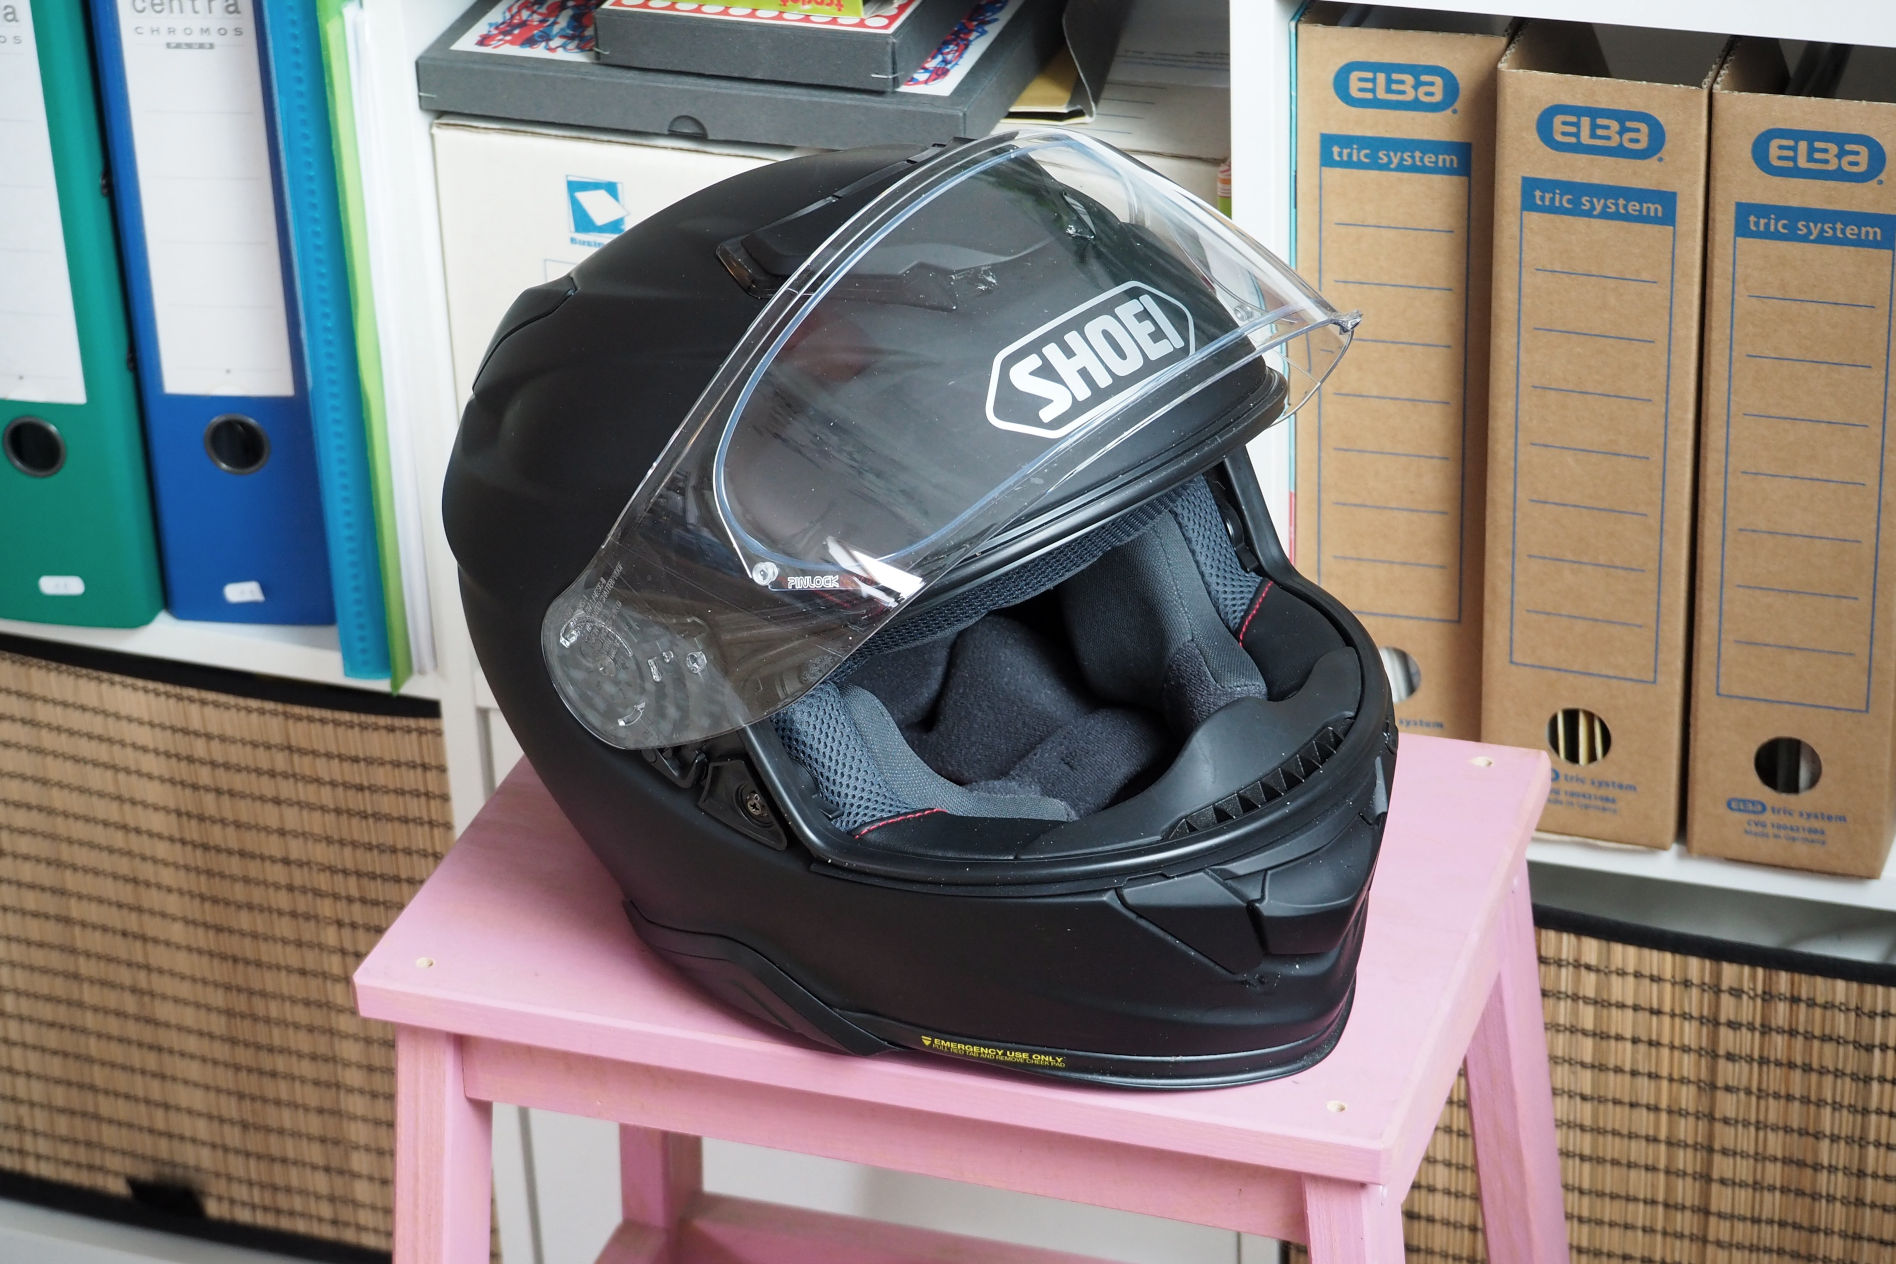 Tuto casque : Monter son Pinlock pour casque moto 